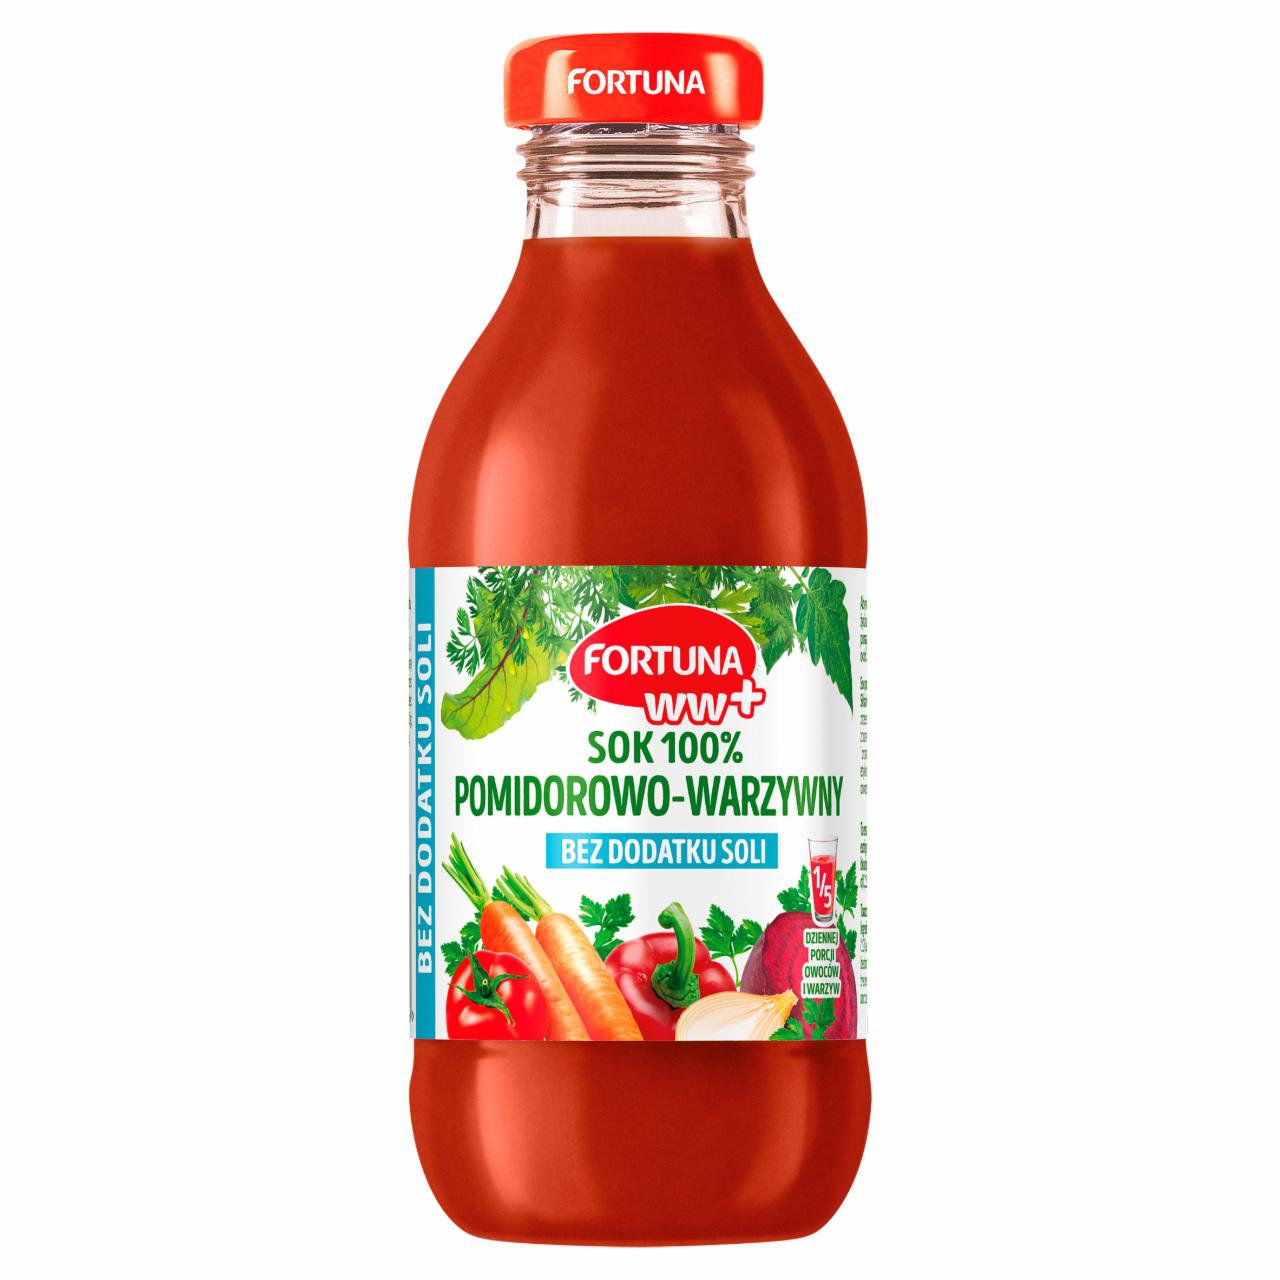 Zdjęcia - Fortuna WW+ Sok 100% pomidorowo-warzywny bez dodatku soli 300 ml